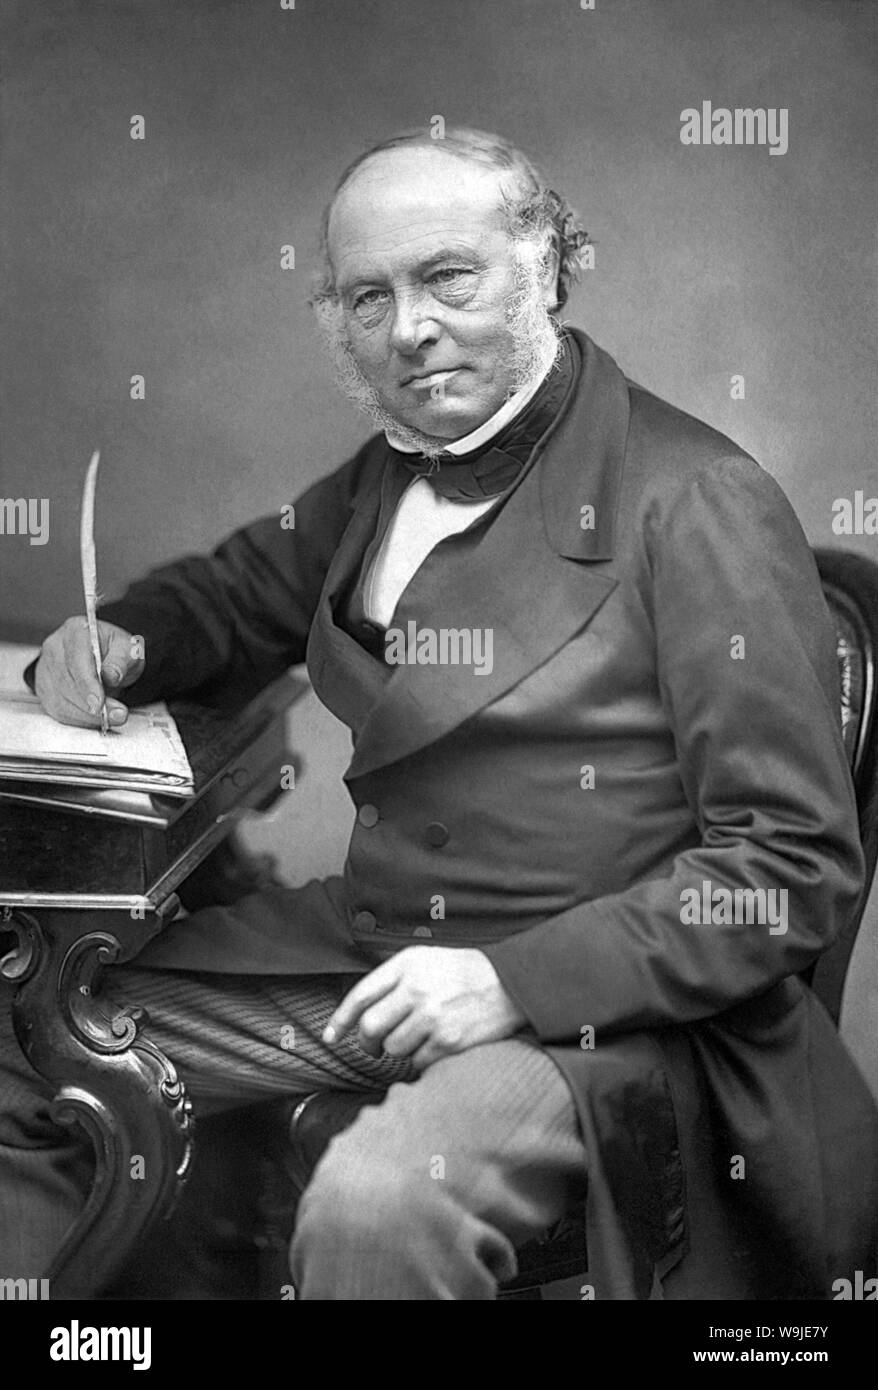 ROWLAND HILL (1795-1879), profesor de inglés, inventor y pionero del servicio postal Foto de stock